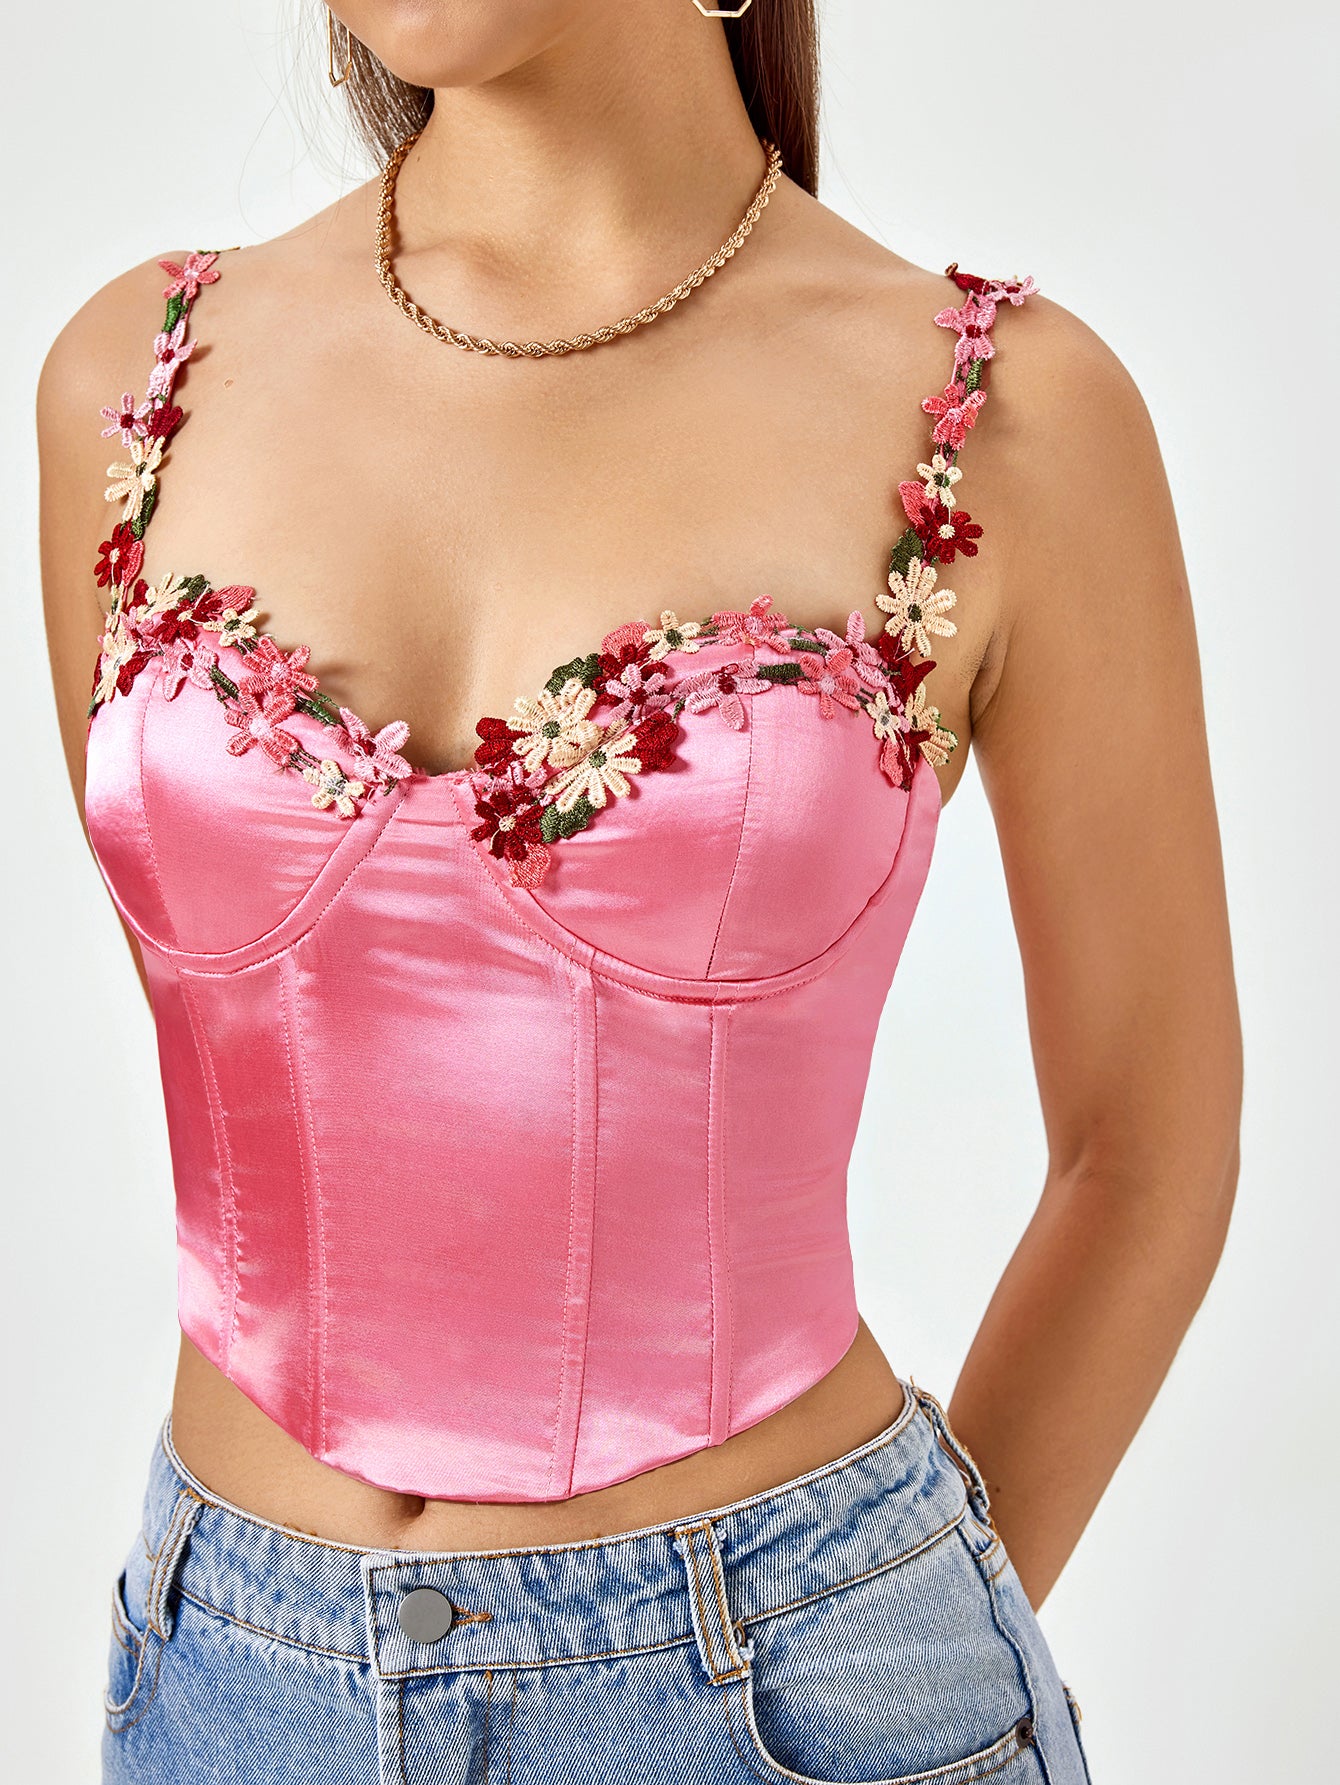 embellished strap satin corset pink top#color_pink